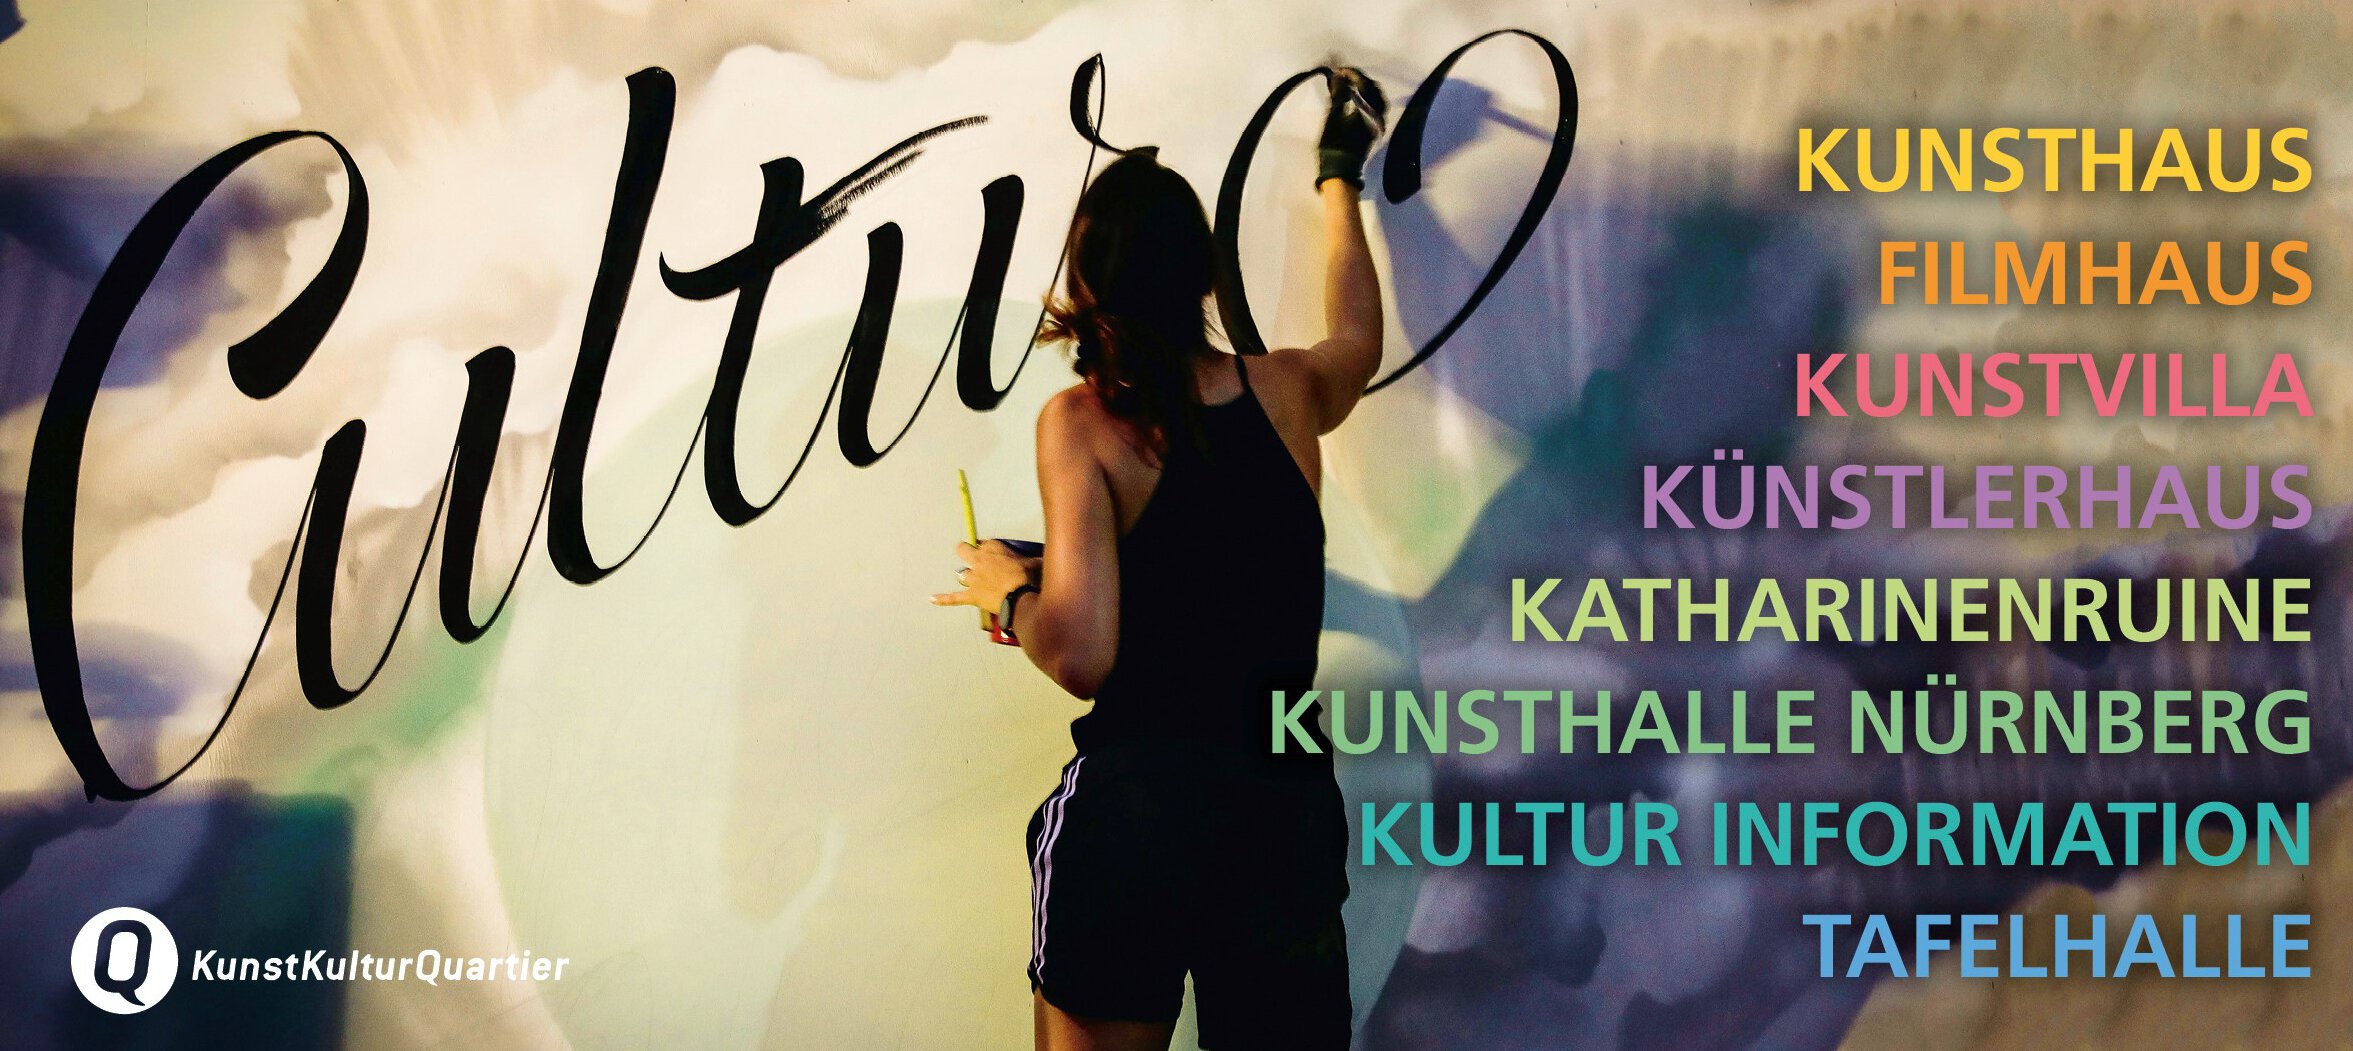 Künstlerin Hannah Rabenstein zeichnet das Wort "Kultur" an eine Wand. Daneben sind alle Einrichtungen des KunstKulturQuartiers gelistet: Kunsthaus, Filmhaus, Kunstvilla, Künstlerhaus, Katharinenruine, Kunsthalle Nürnberg, Kultur Information, Tafelhalle. 